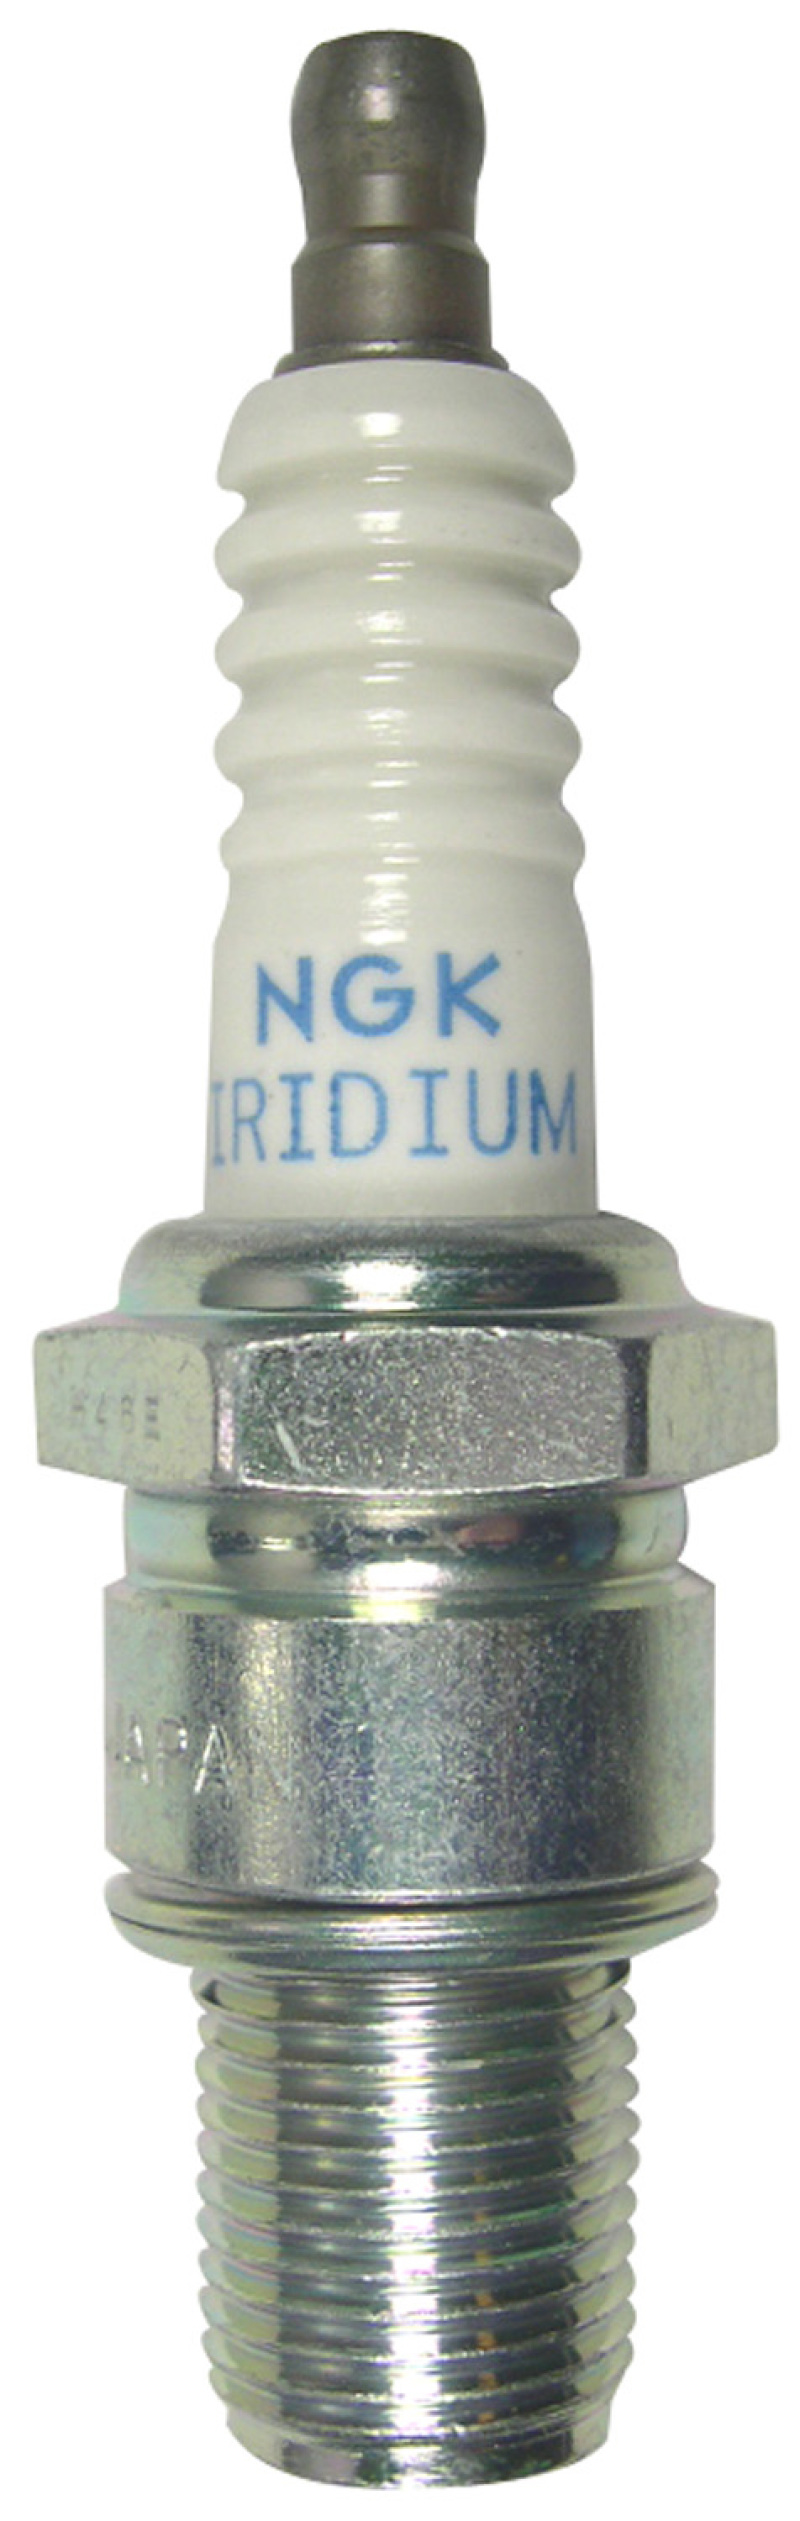 NGK Racing Spark Plug Box of 4 (R7376-8) - 5442